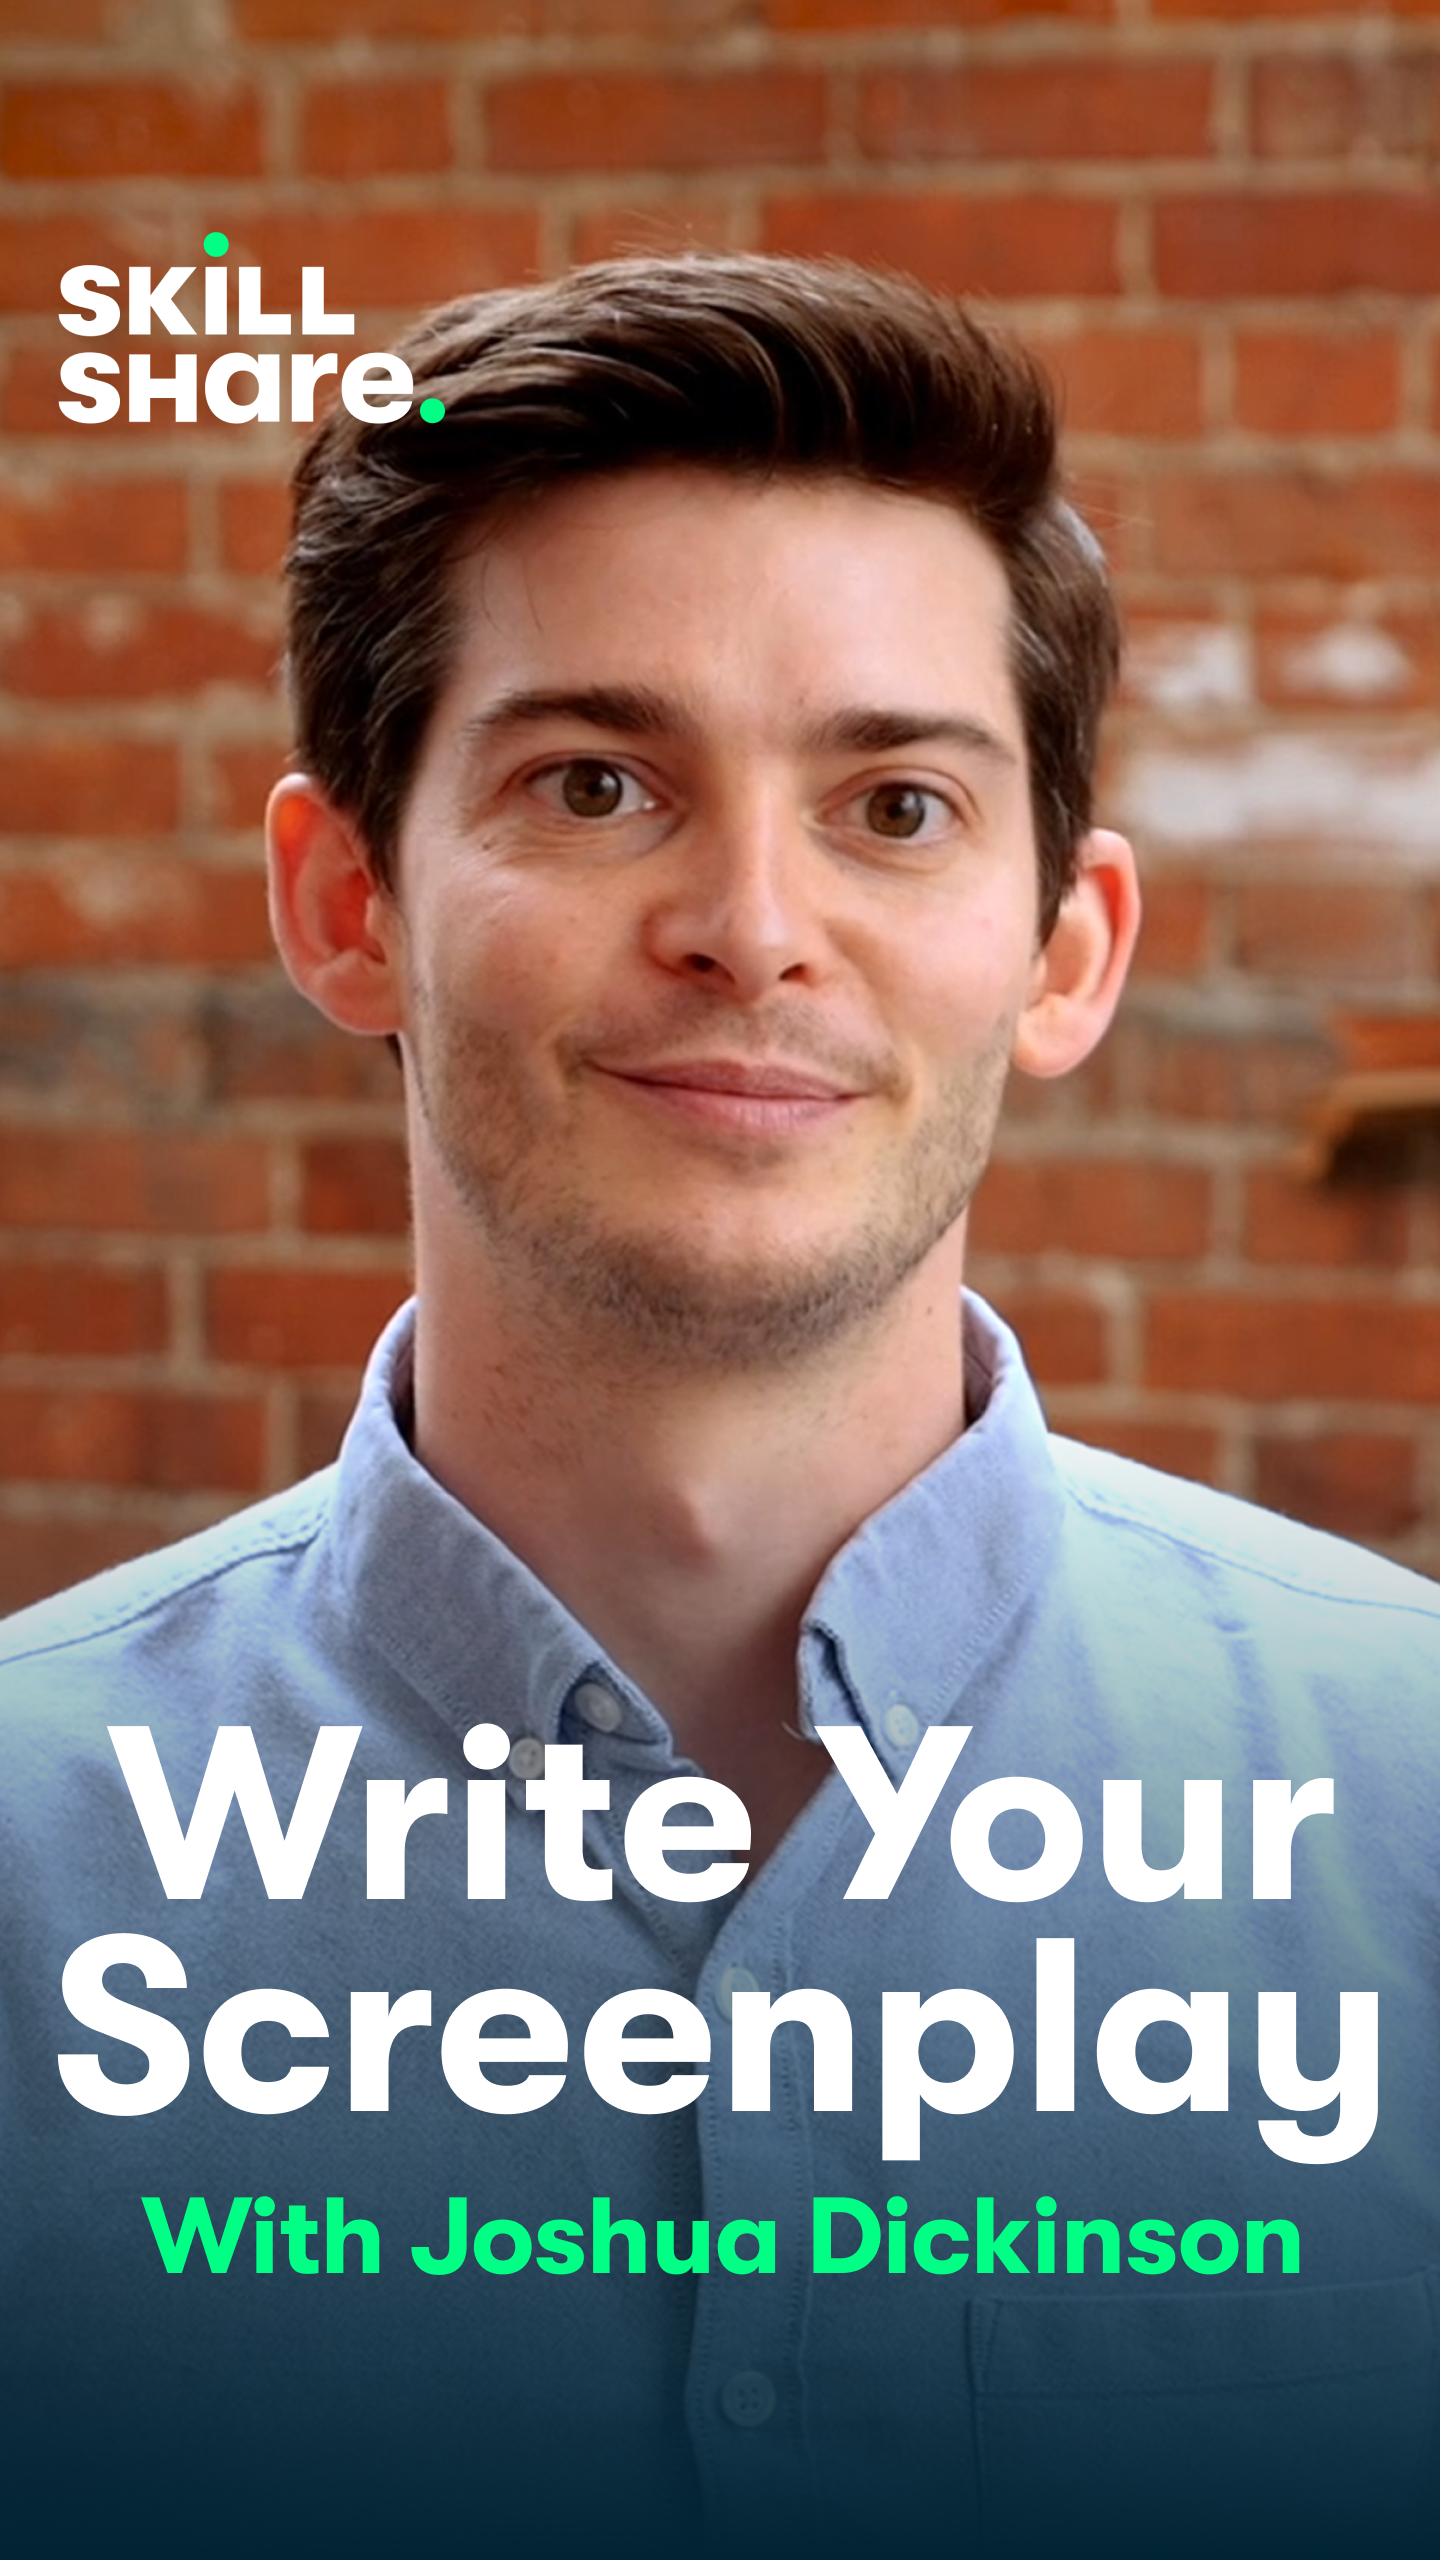 Skillshare: Write Your Sceenplay